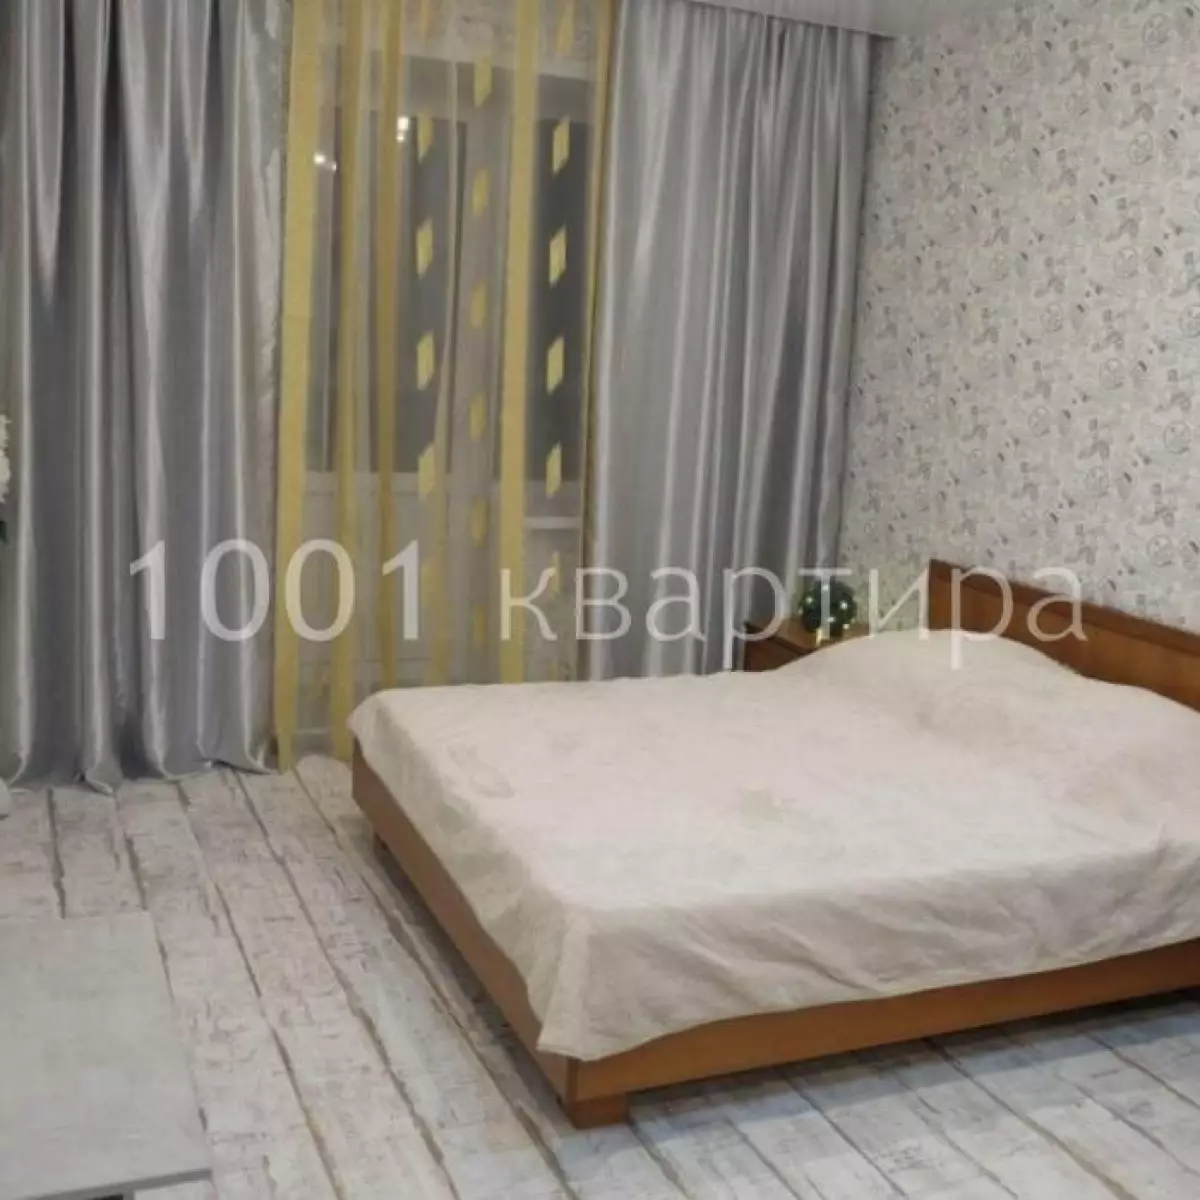 Вариант #124826 для аренды посуточно в Казани Чистопольская, д.72 на 5 гостей - фото 1